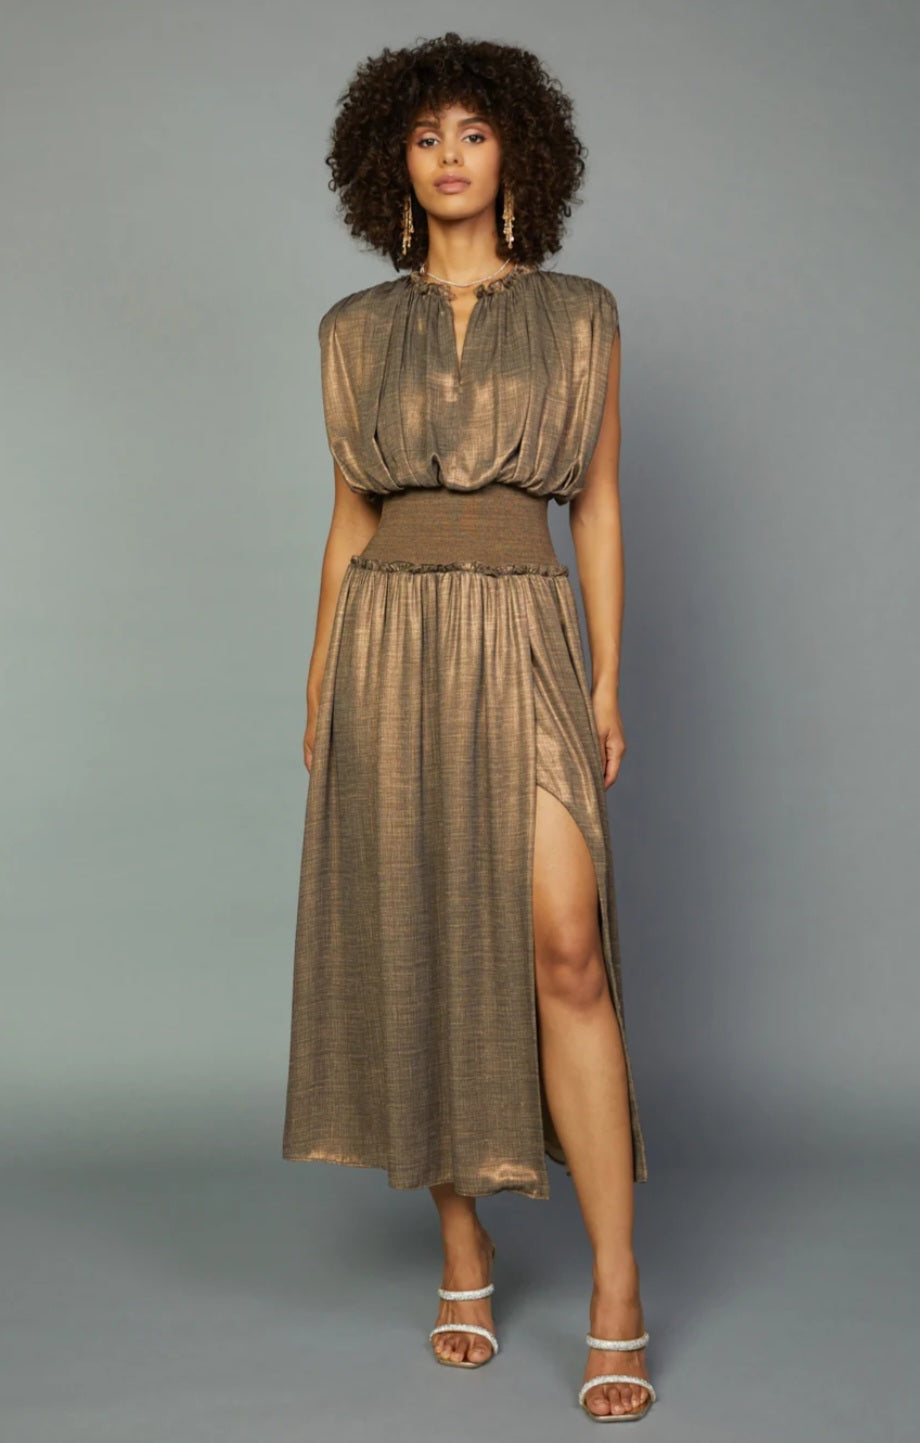 Bronze Goddess Dress - The Flaunt